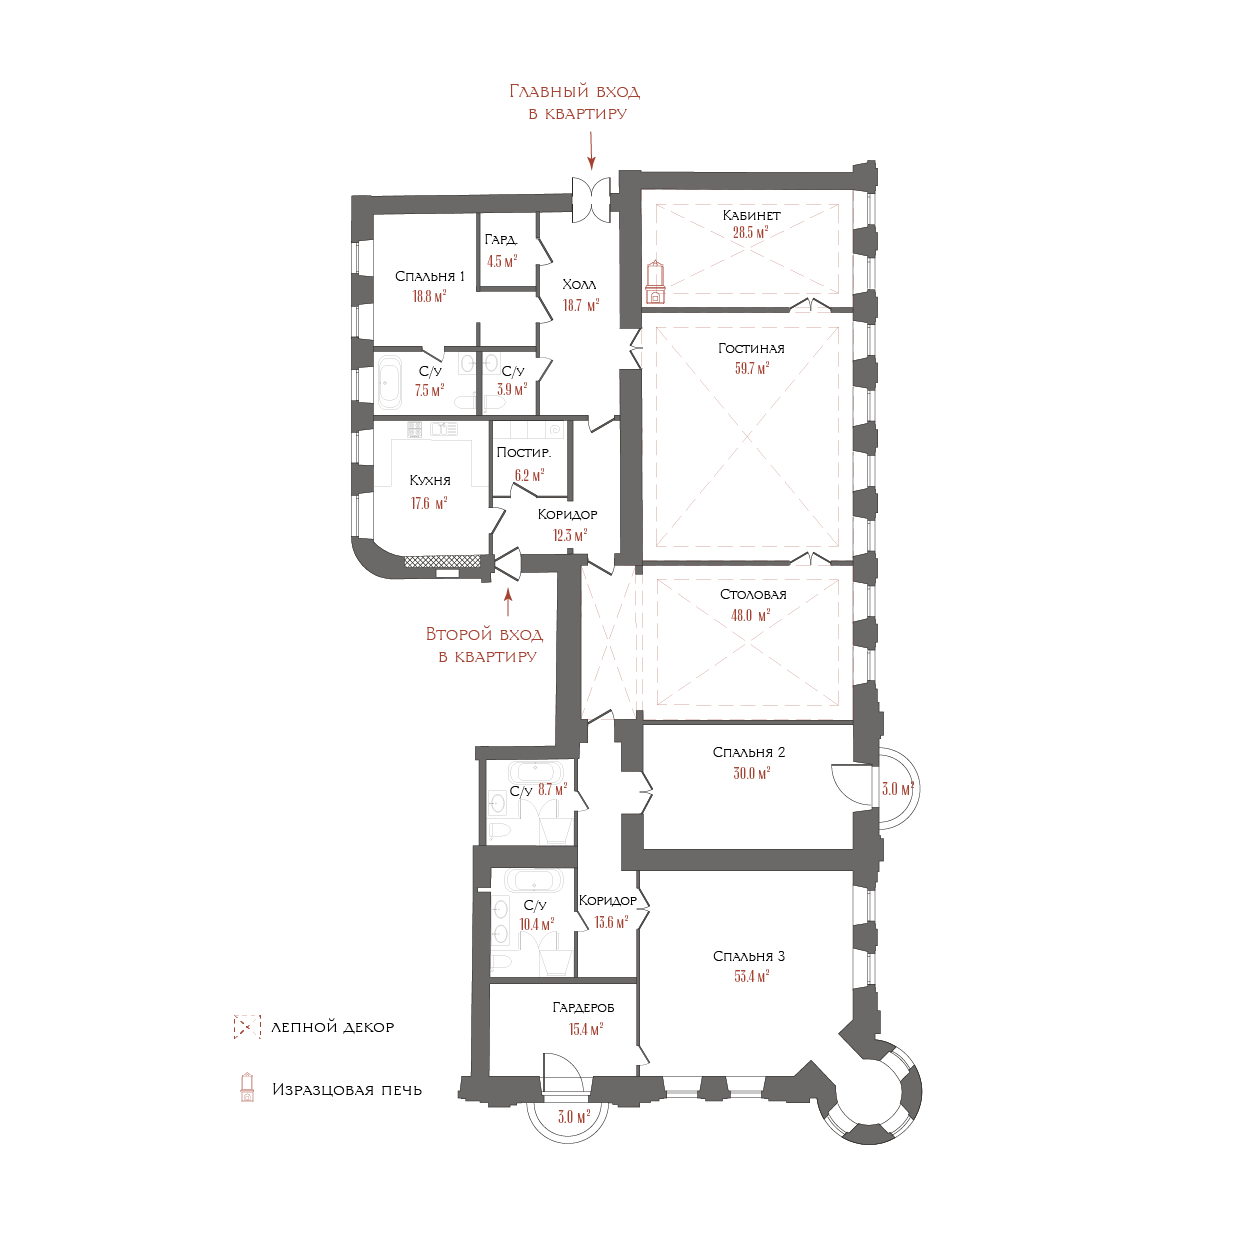 6-комнатная квартира  №14 в Три грации: 354.92 м², этаж 3 - купить в Санкт-Петербурге